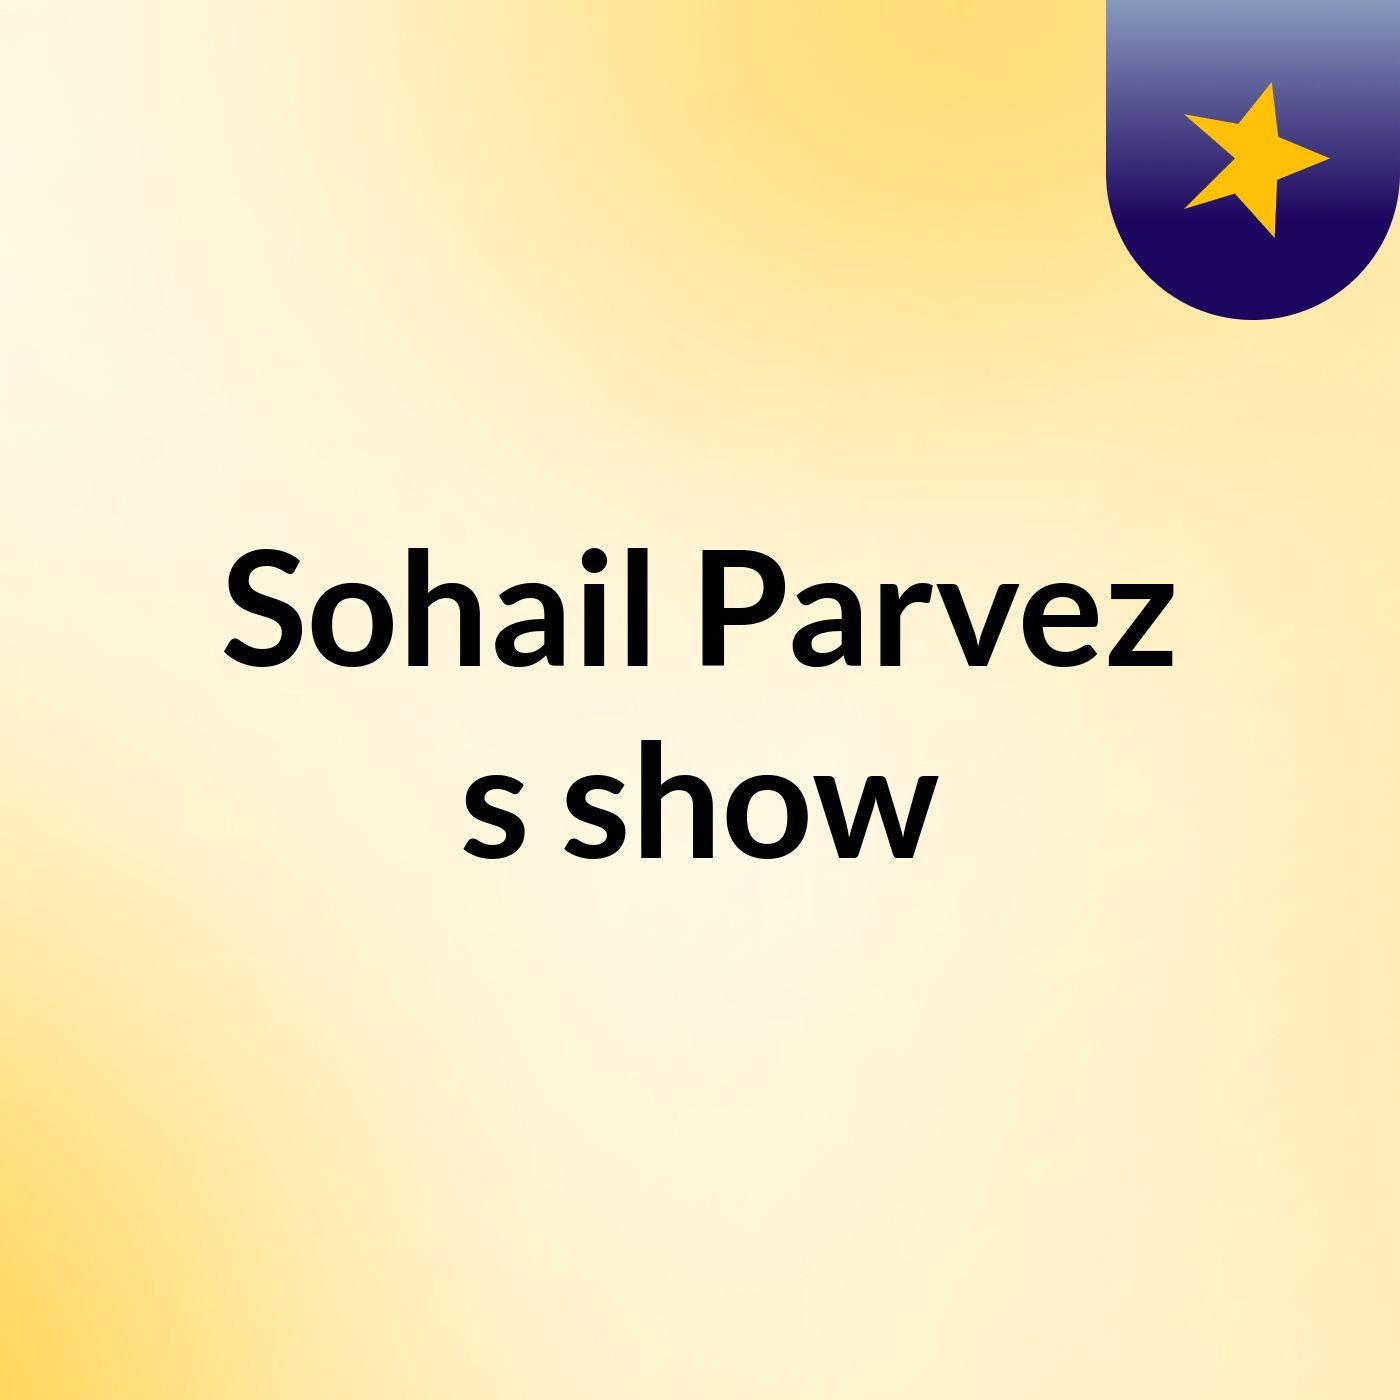 Sohail Parvez's show